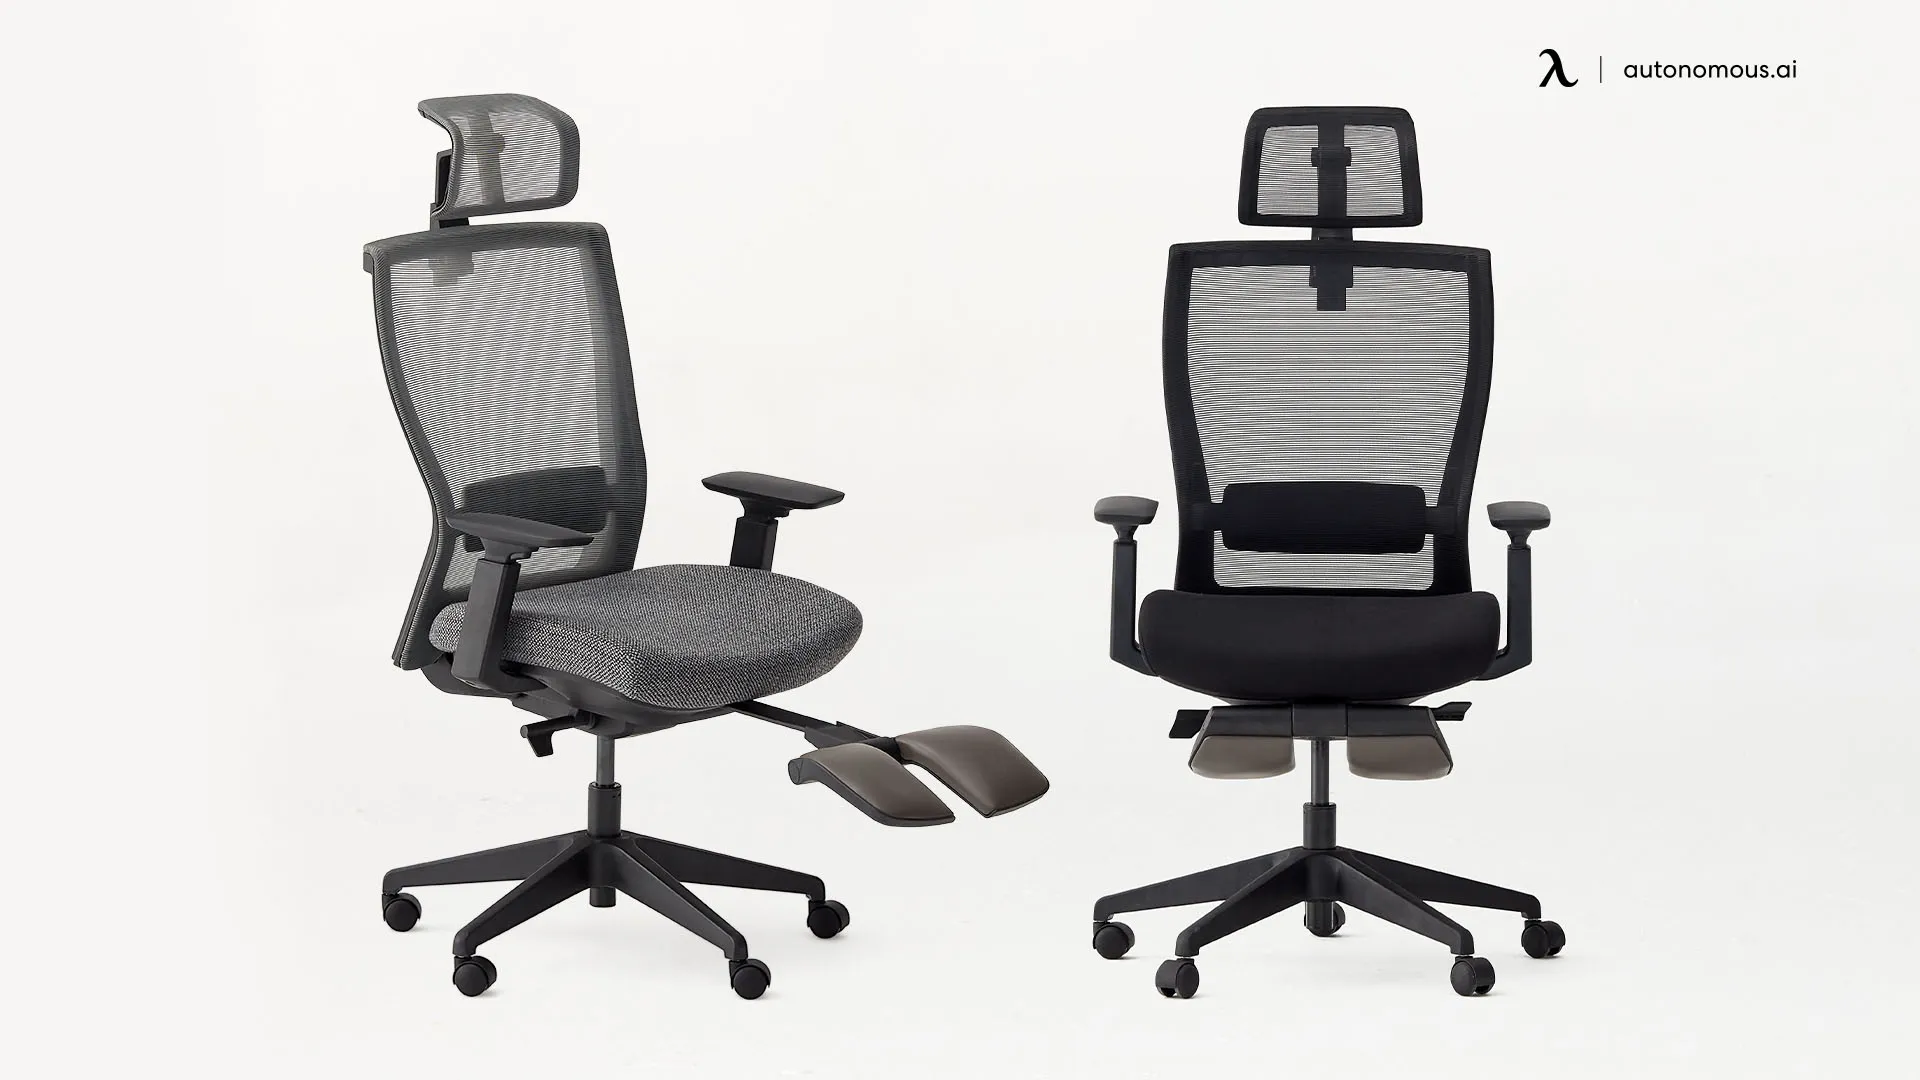 Autonomous’ ErgoChair Recline mesh office chair